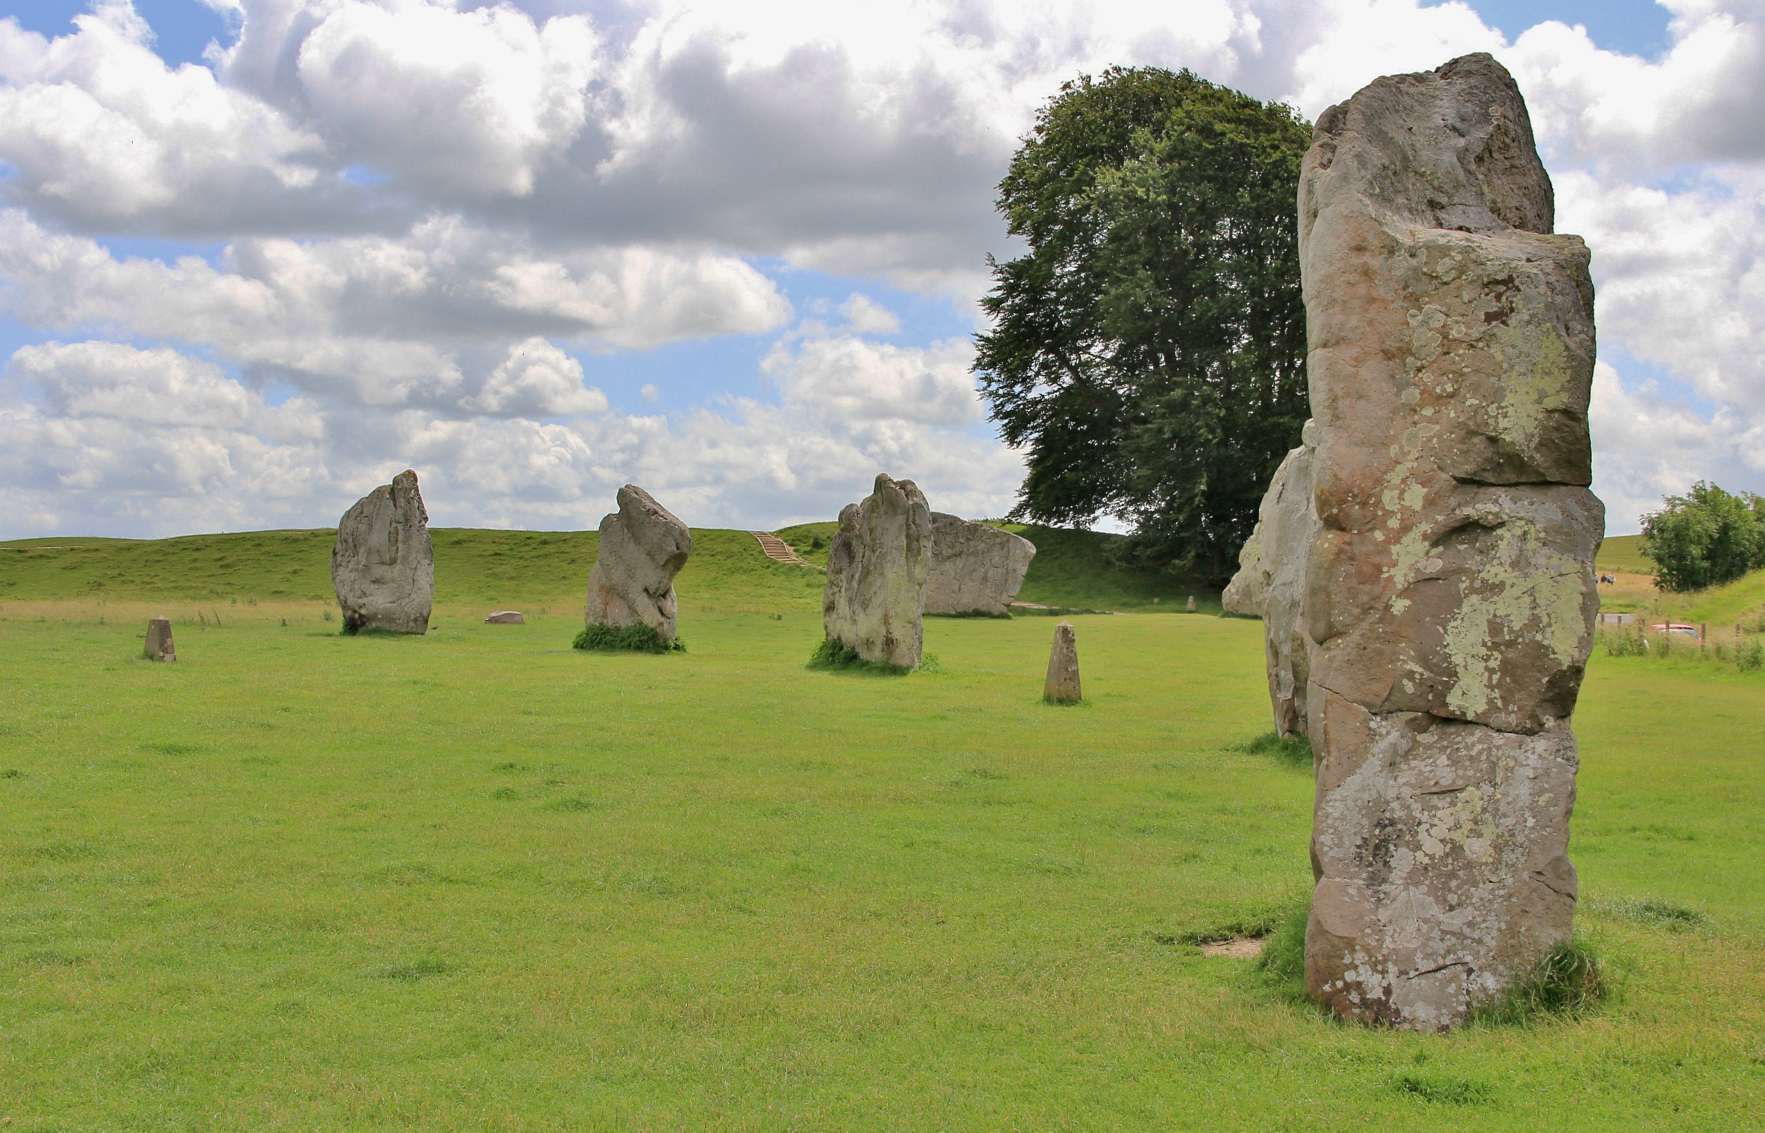 De enorme 330 meter brede stenen cirkel van Avebury werd gebouwd tussen ongeveer 1,082 voor Christus en 2850 voor Christus. Met drie steencirkels en oorspronkelijk 2200 enorme staande stenen, is het sinds de 100e eeuw het onderwerp van aanzienlijk archeologisch belang.